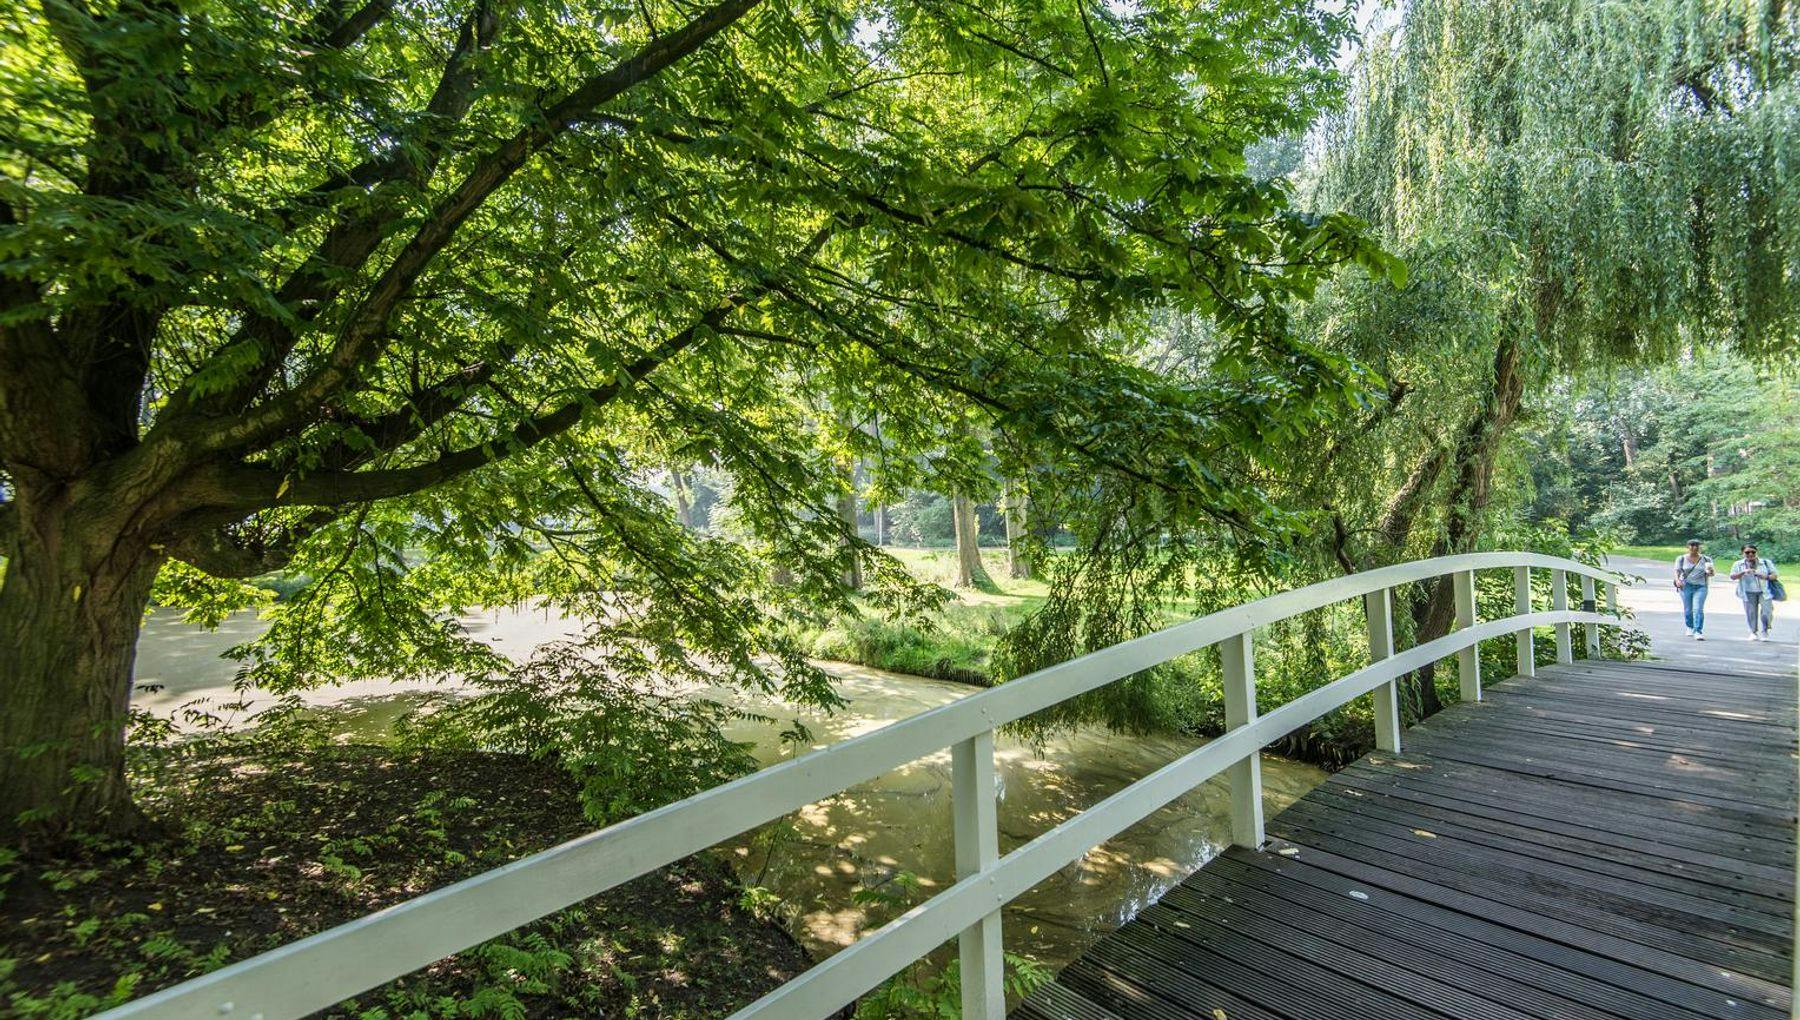 Noorderpark walking path bridge